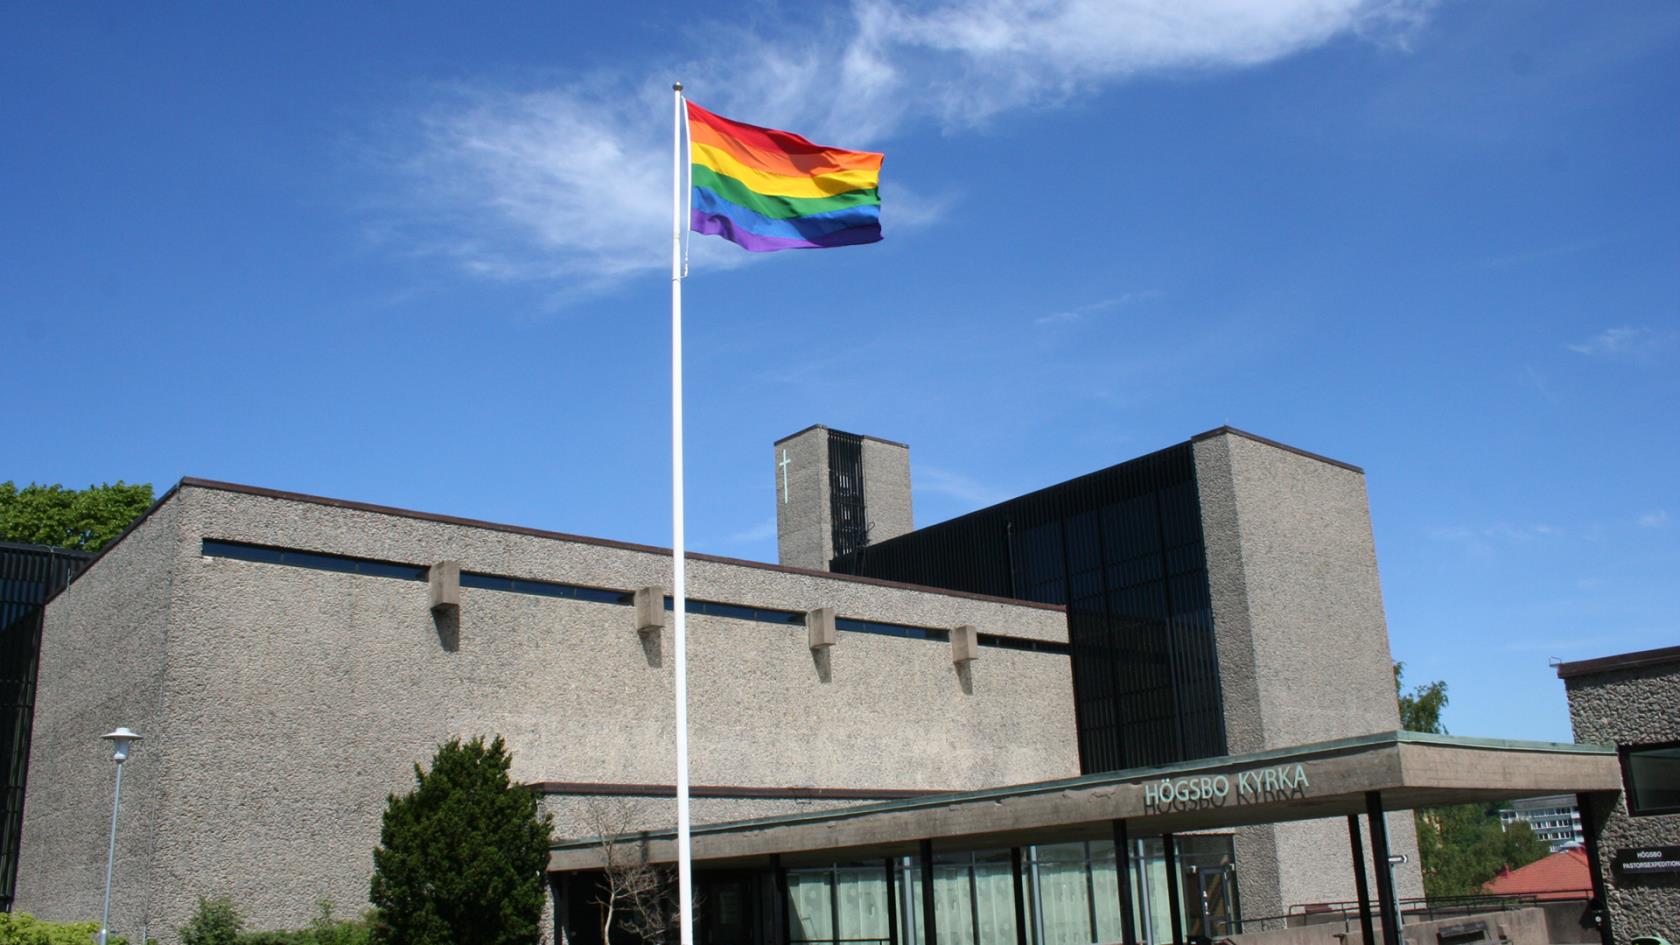 Högsbo kyrka utifrån. HBTQ-flaggan är hissad.